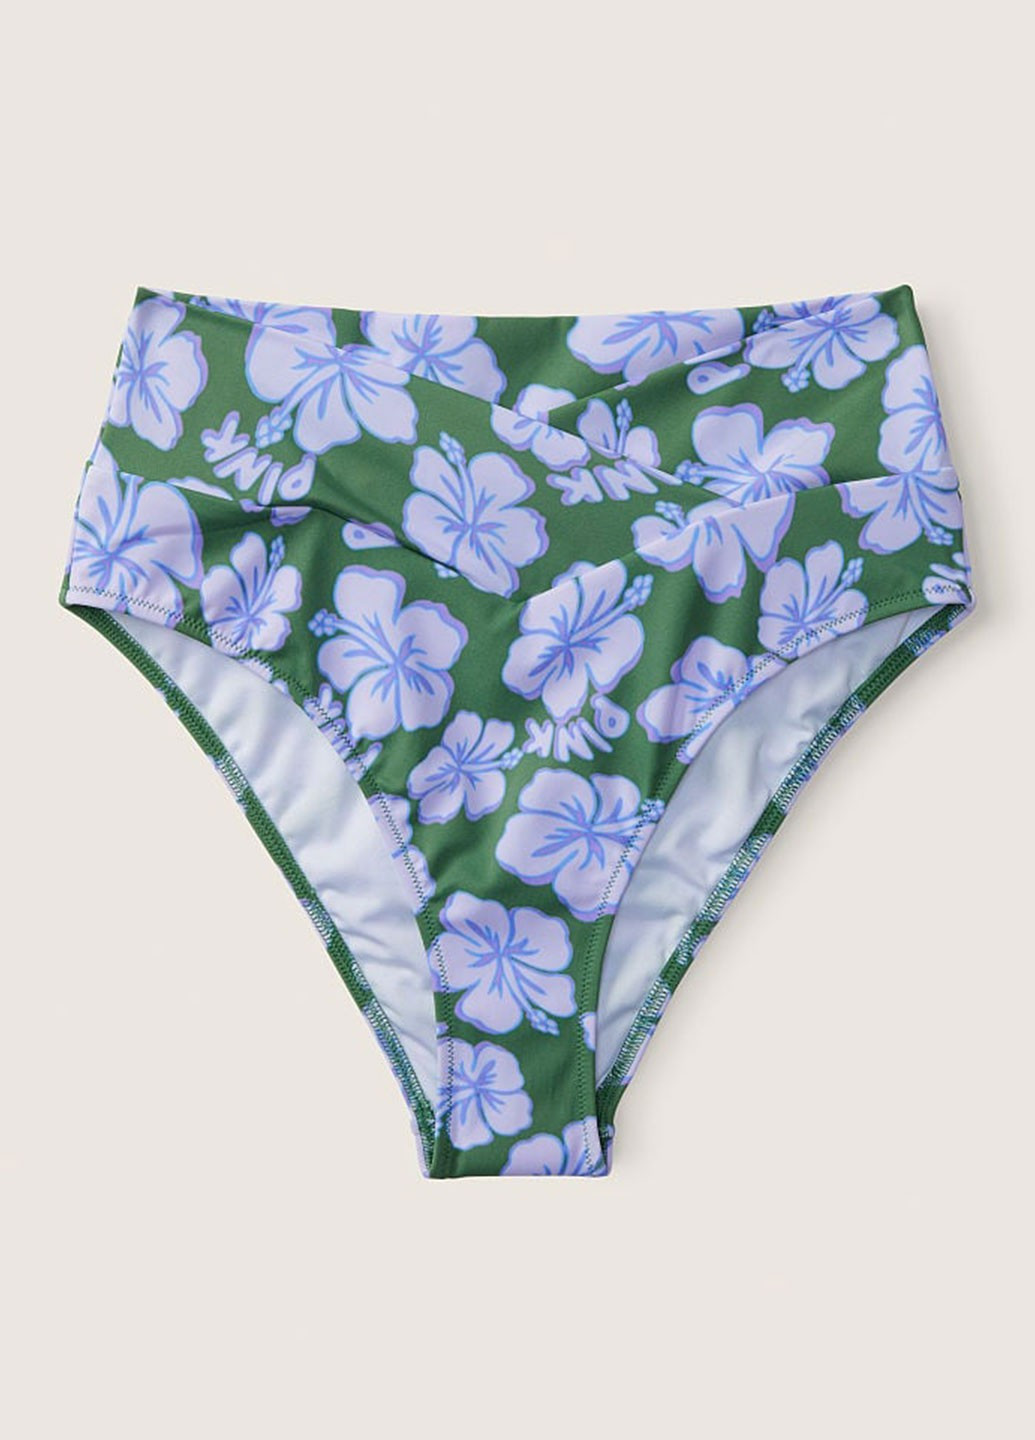 Зеленый демисезонный купальник (лиф, трусики, юбка) раздельный Victoria's Secret